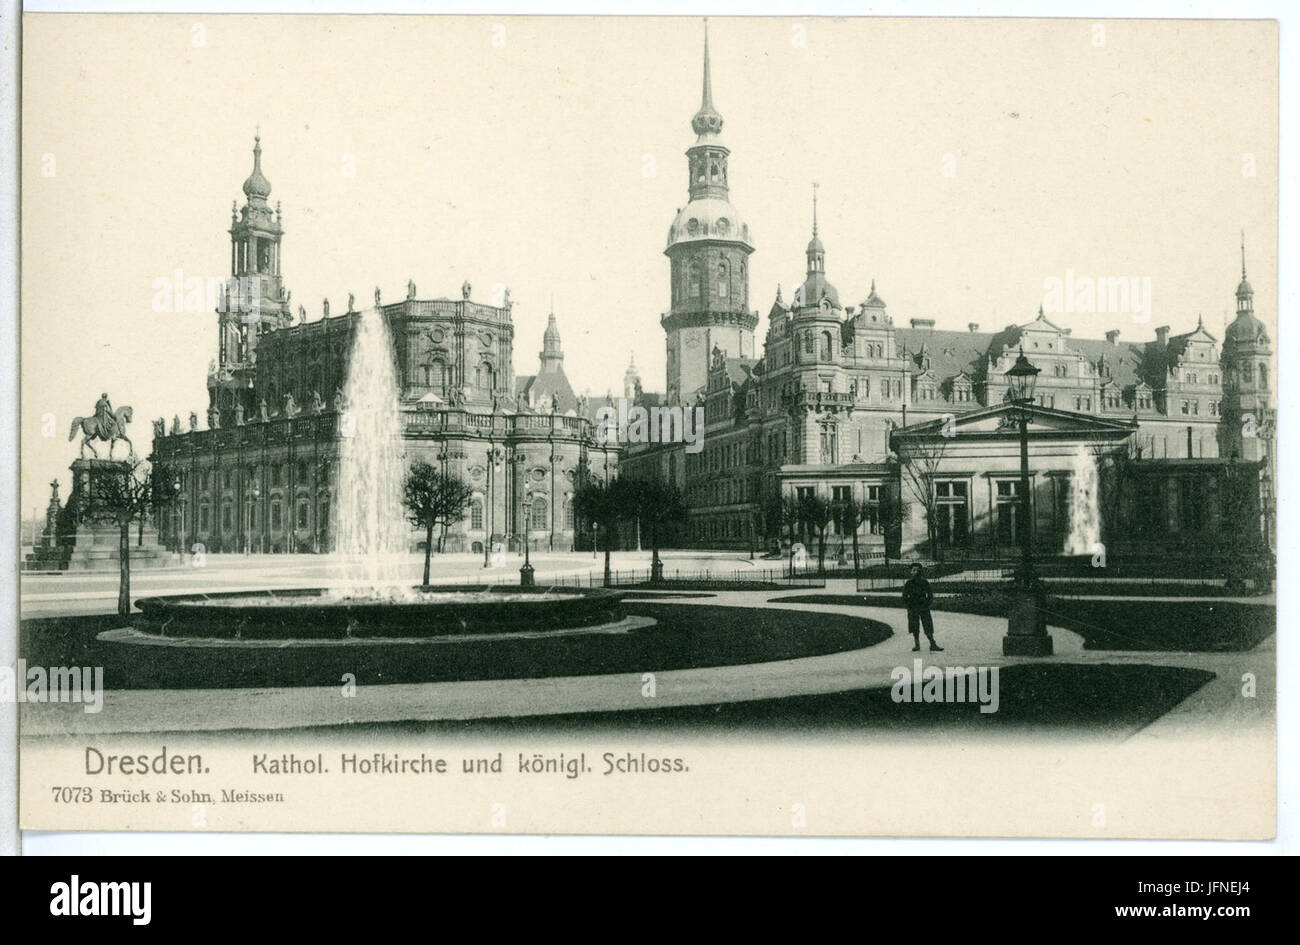 07073-Dresden-1906-Katholische Hofkirche und königliches Schloß-Brück & Sohn Kunstverlag Stock Photo